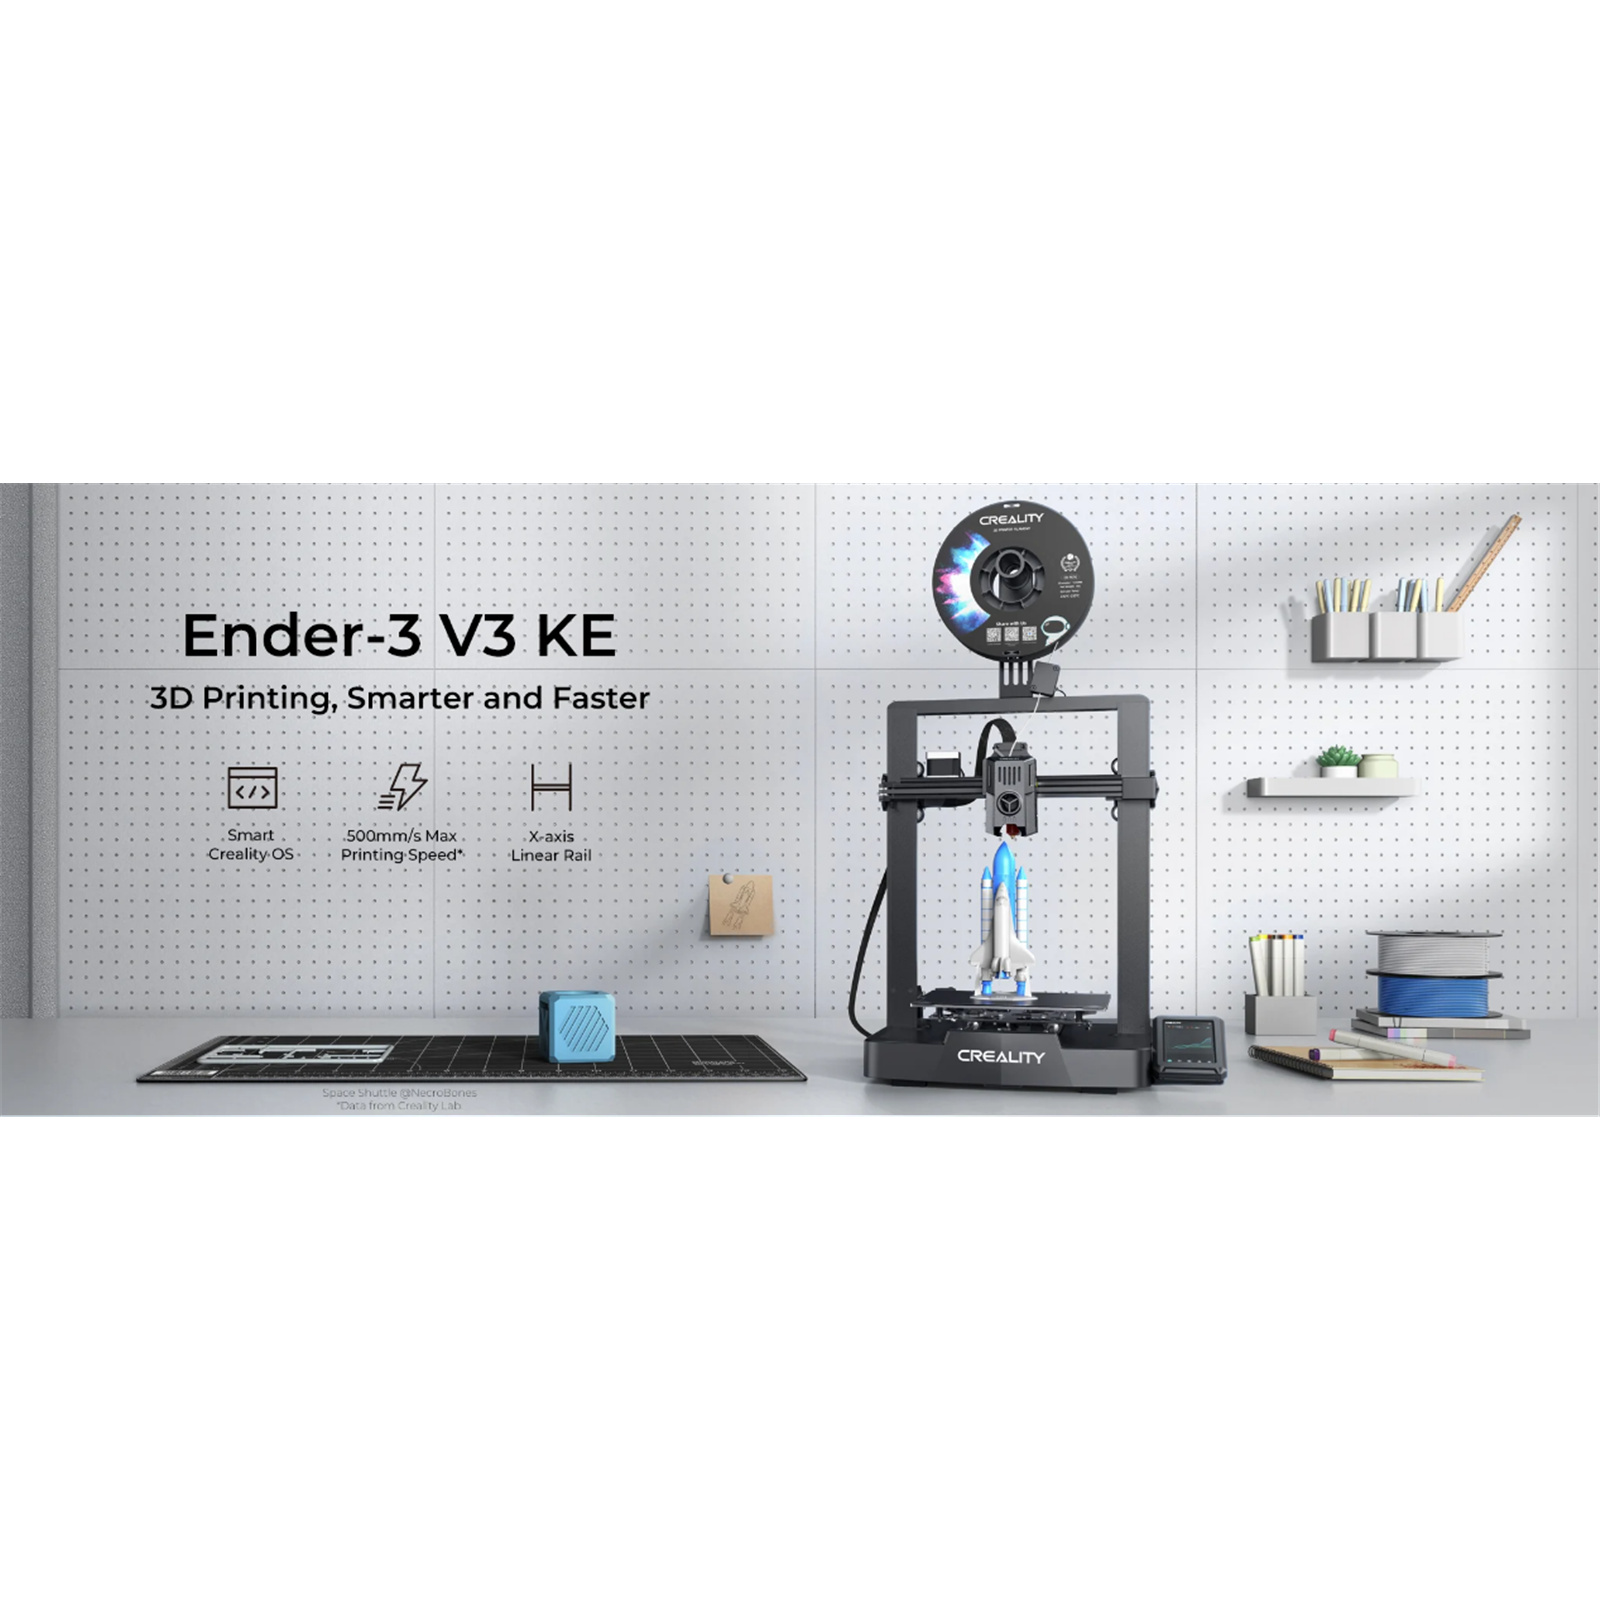 Ender 3 V3 SE/KE Cable Holder by Peace, Download free STL model